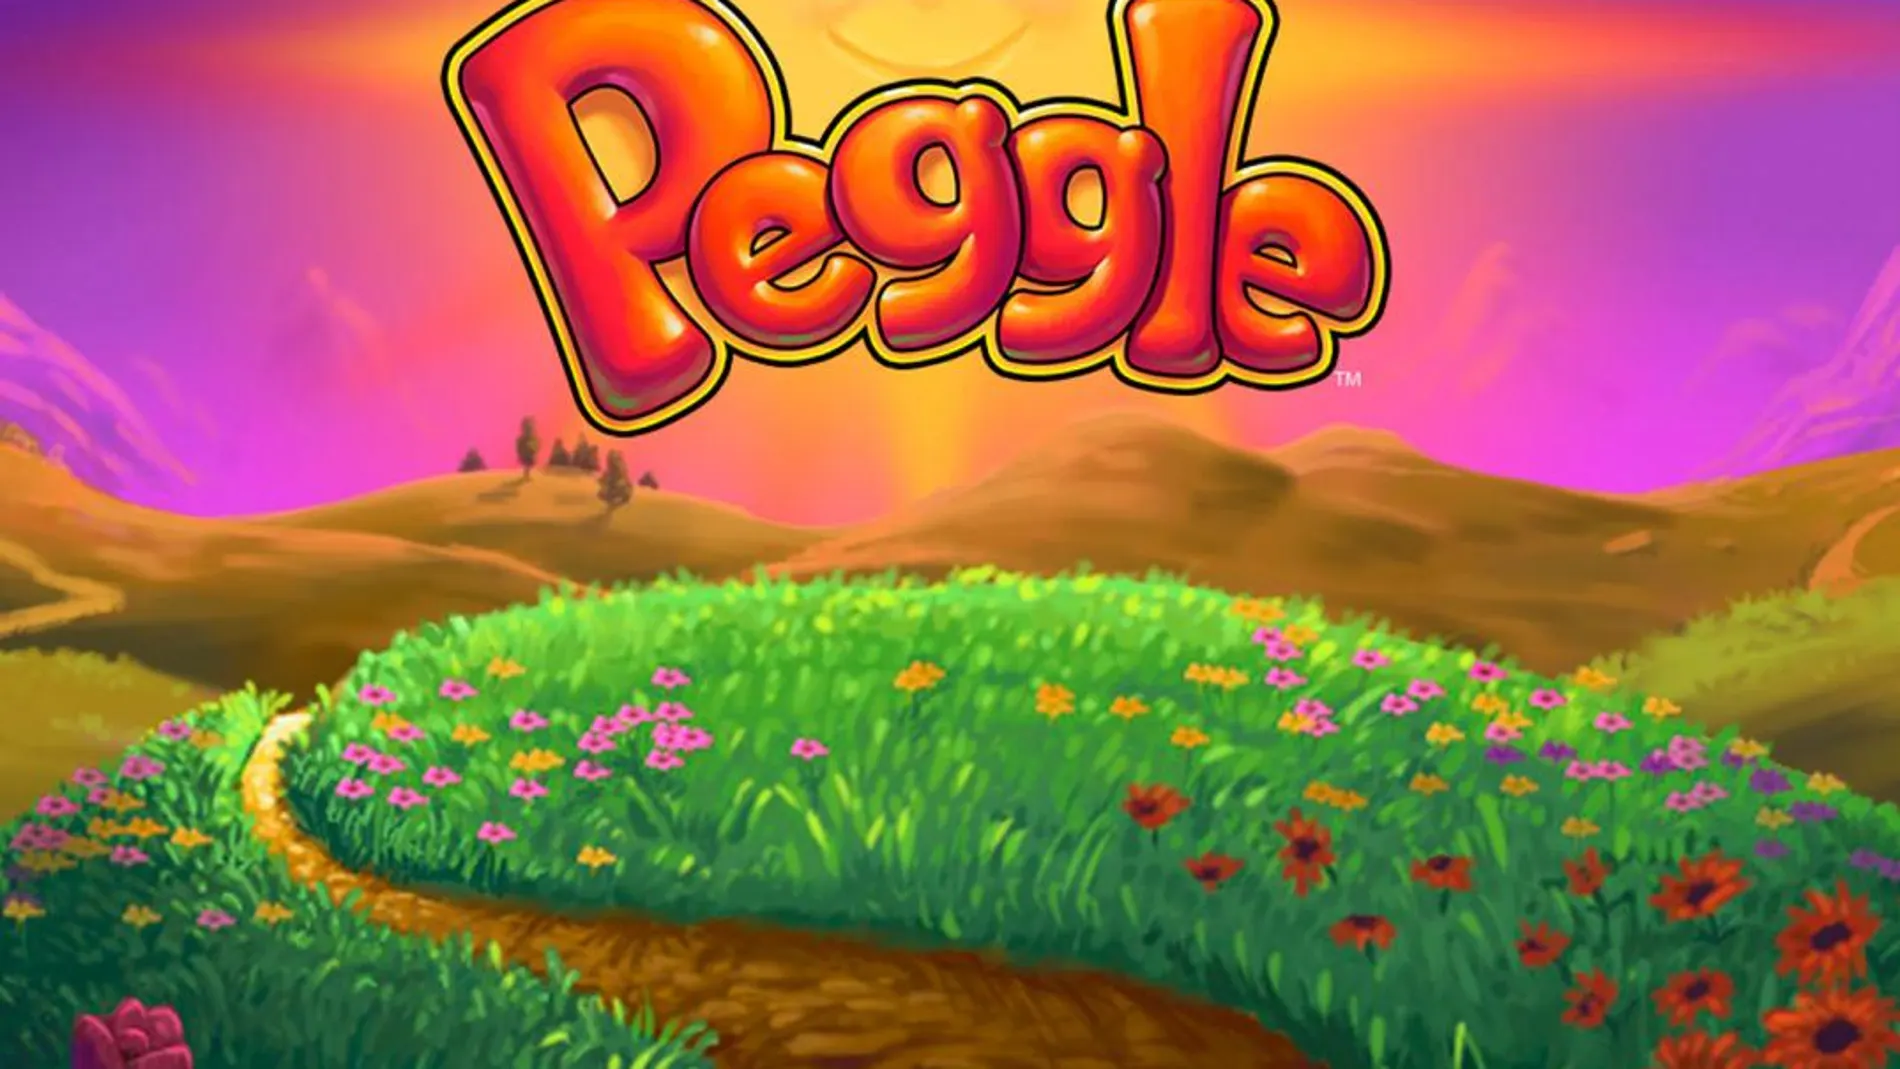 Invita la casa: descarga gratis Peggle para ordenador por tiempo limitado